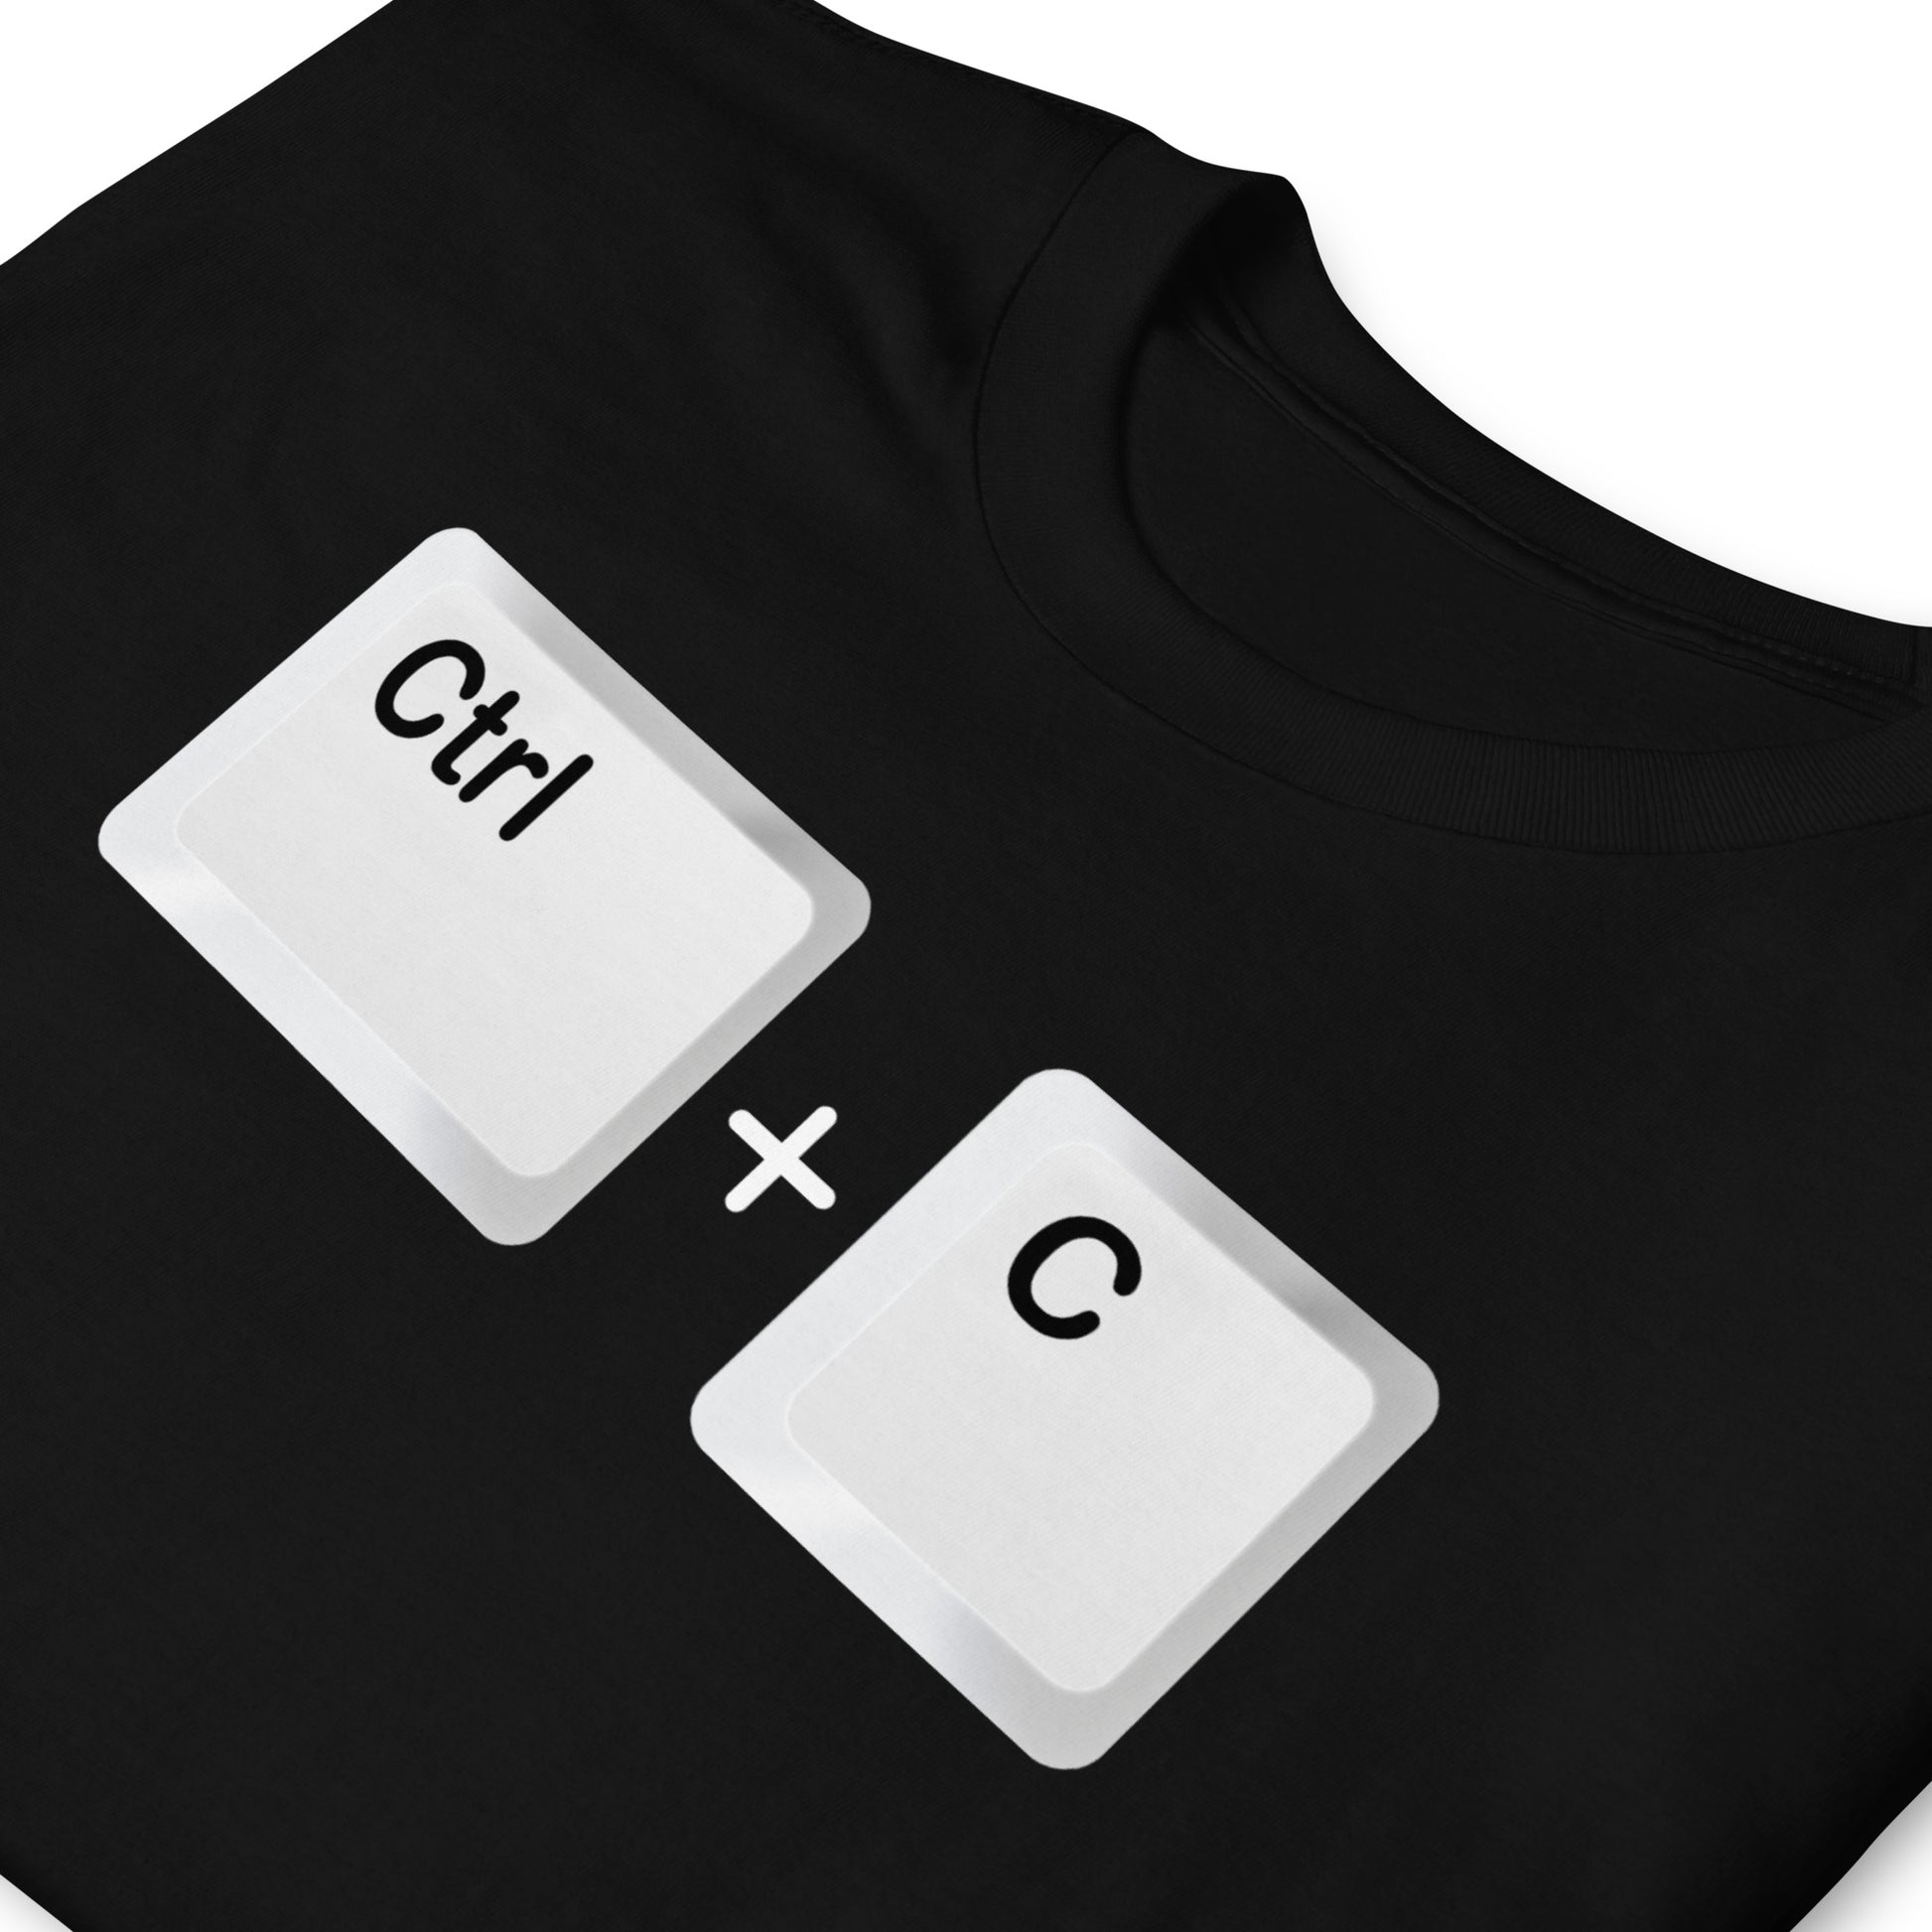 Camiseta con el comando Ctrl C - Copiar. Color negro.